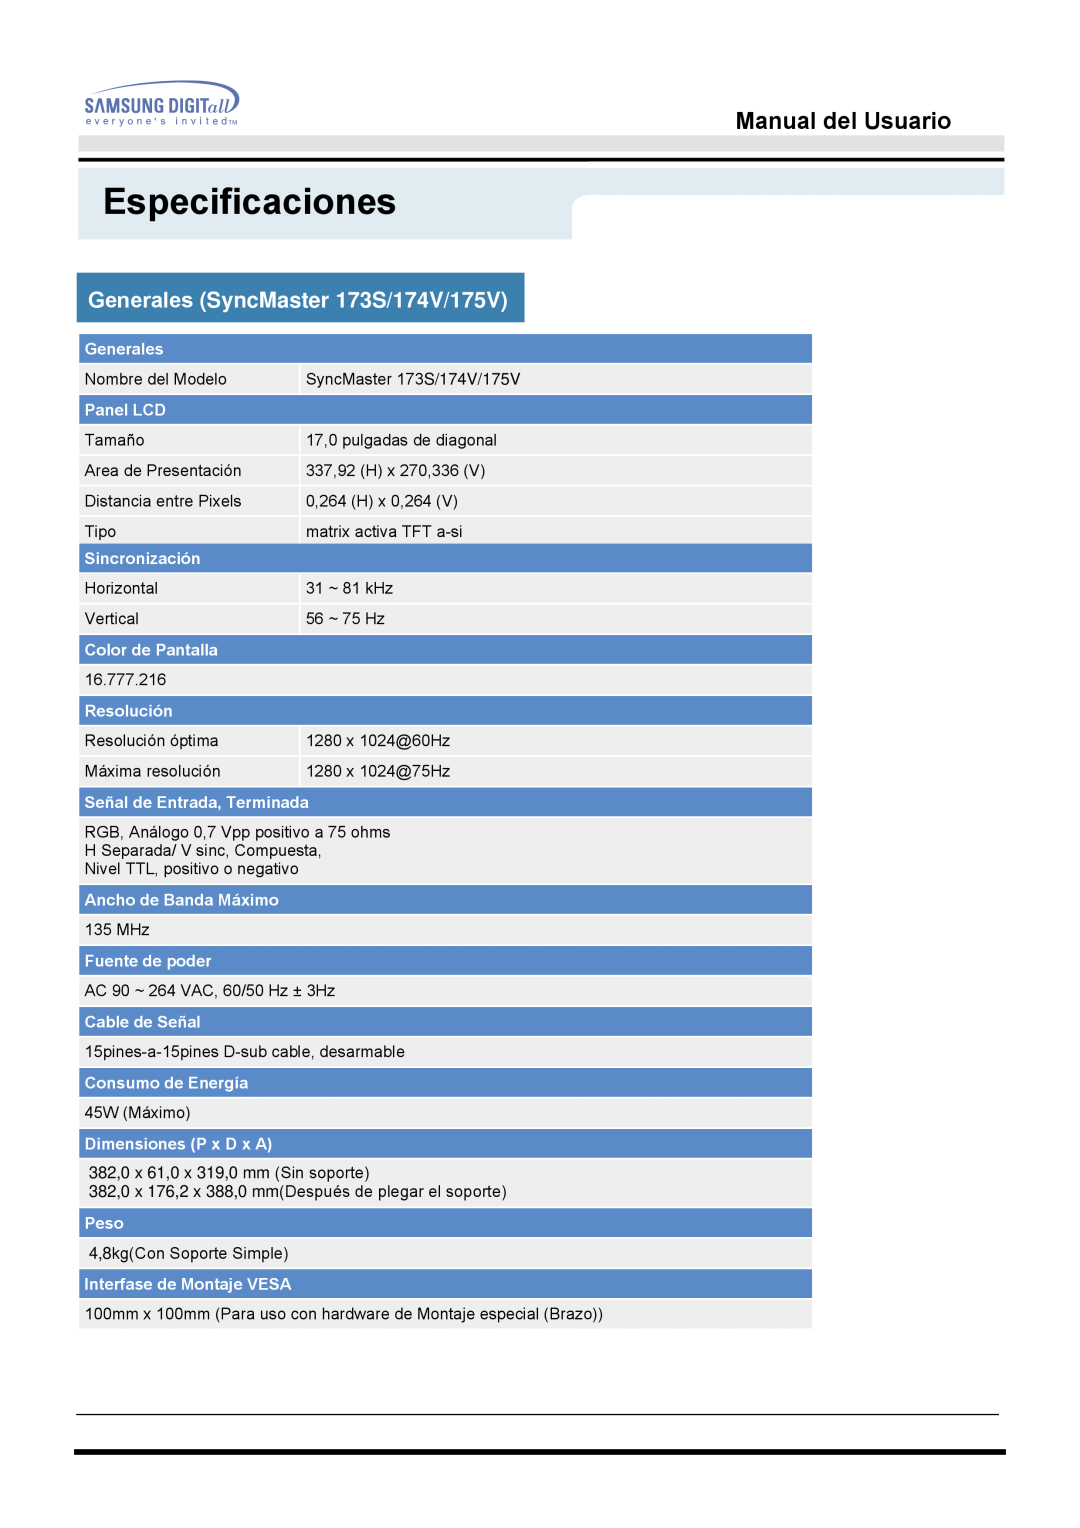 Samsung 153S manual Generales SyncMaster 173S/174V/175V, Especificaciones, Manual del Usuario 